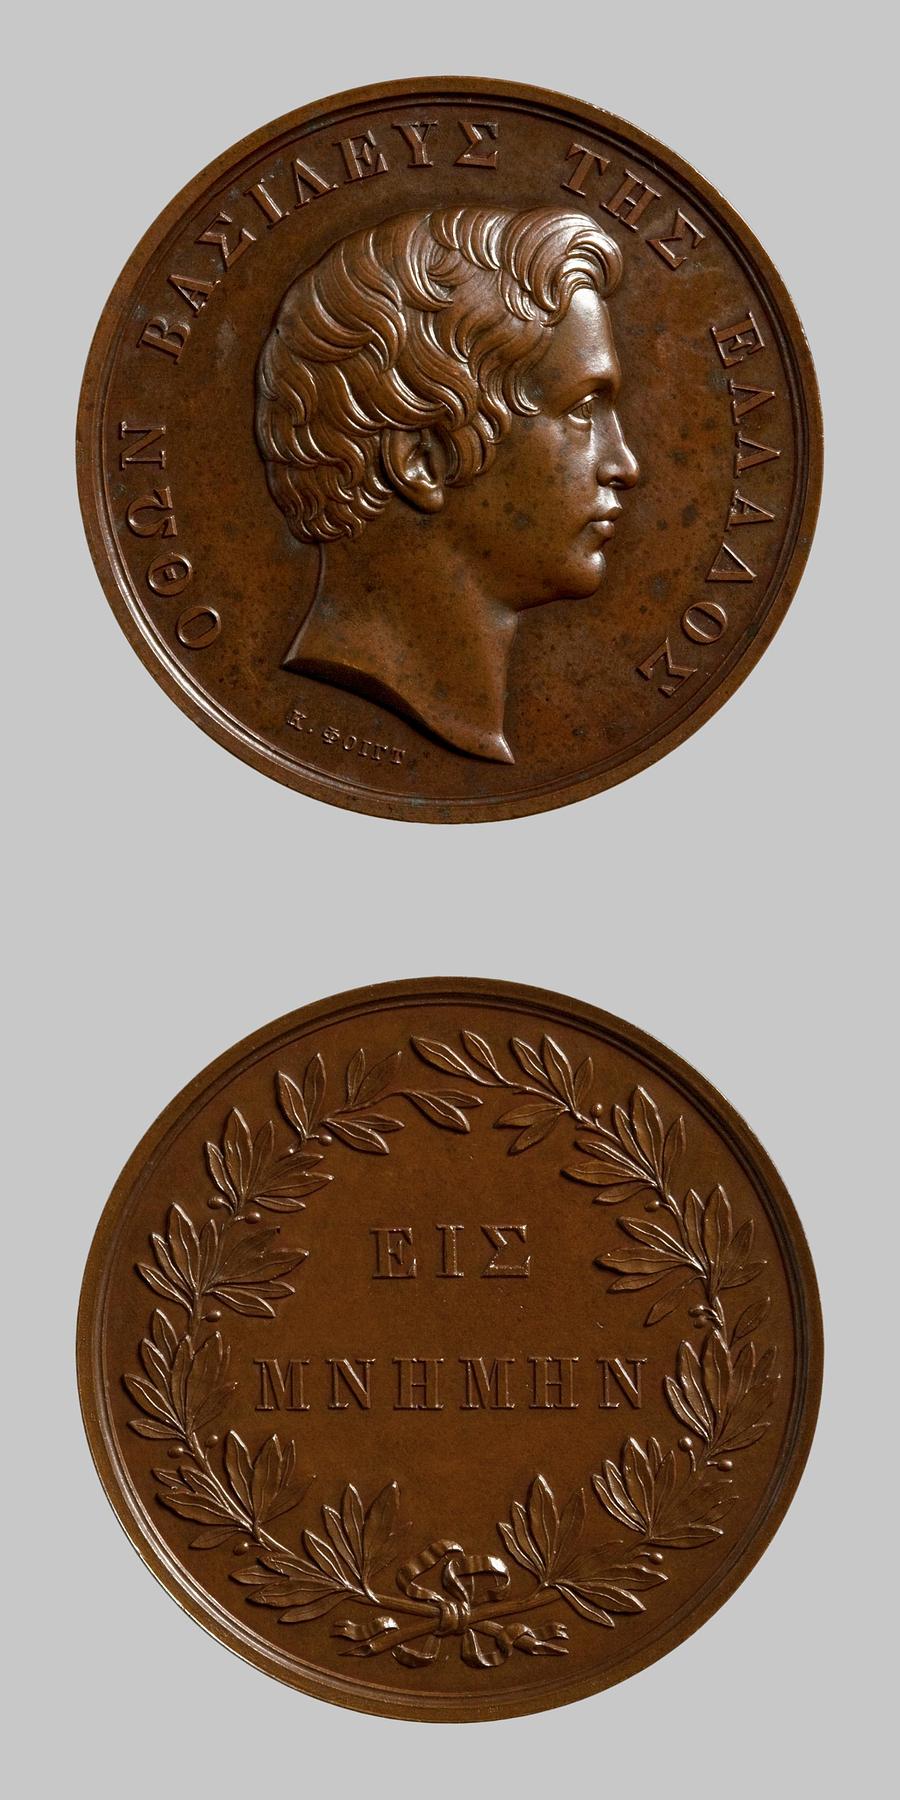 Medaljens forside: Kong Otto 1. af Grækenland. Medaljens bagside: Laurbærkrans og inskription, F128